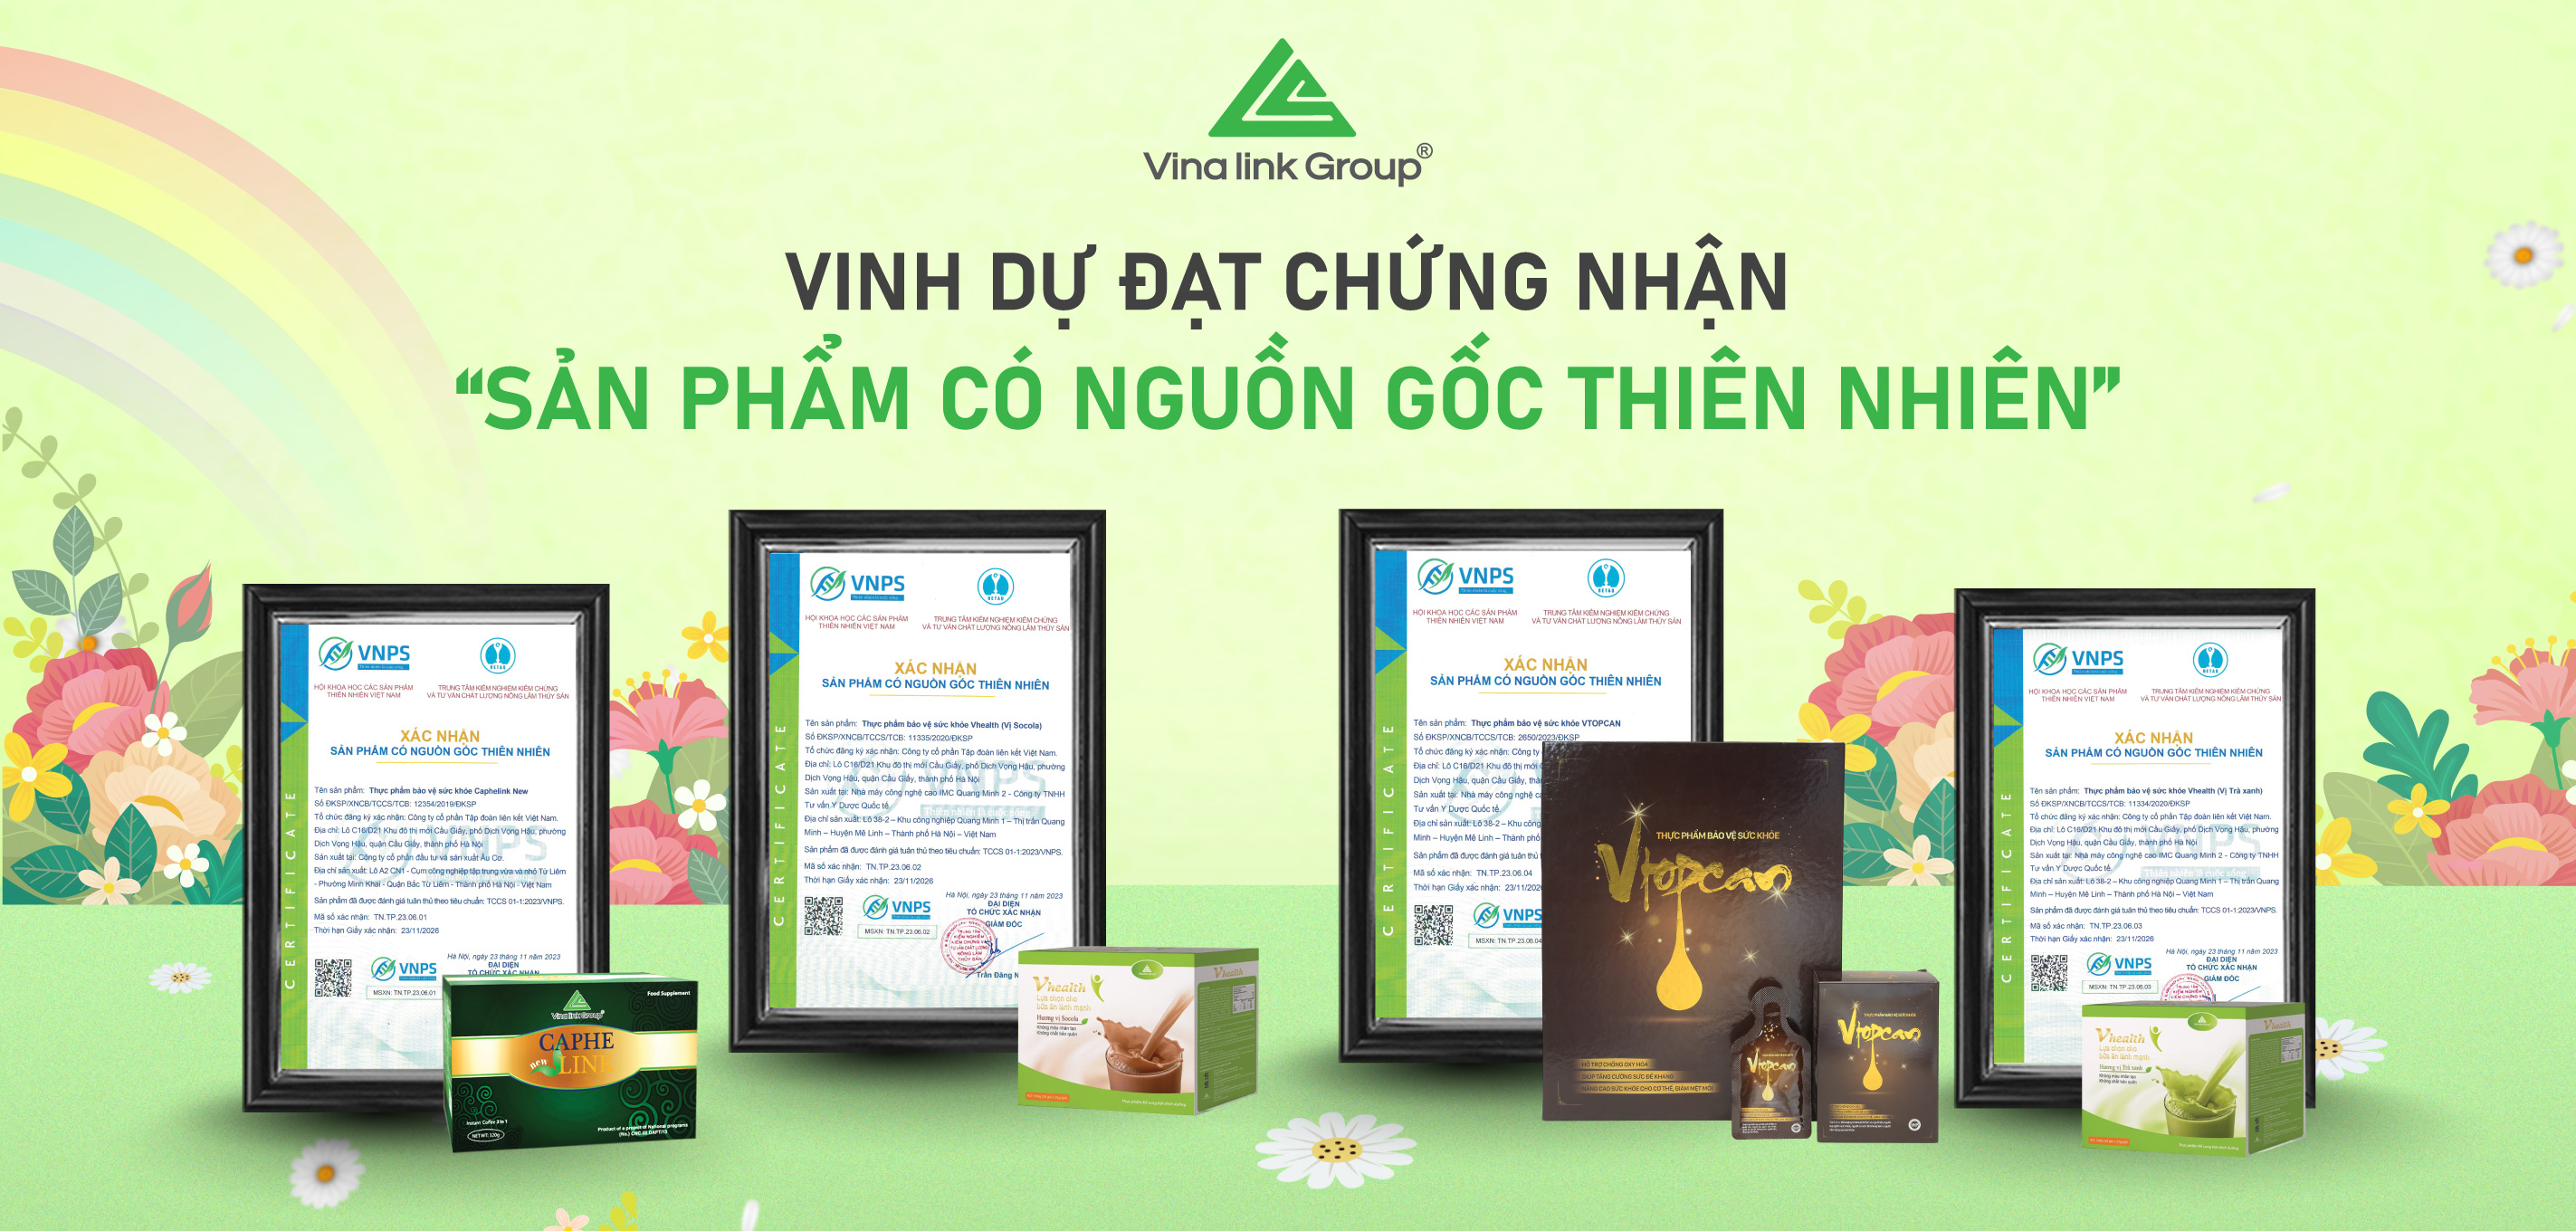 Vinalink-group-dat-chung-nhan-san-pham-co-nguon-goc-thien-nhien